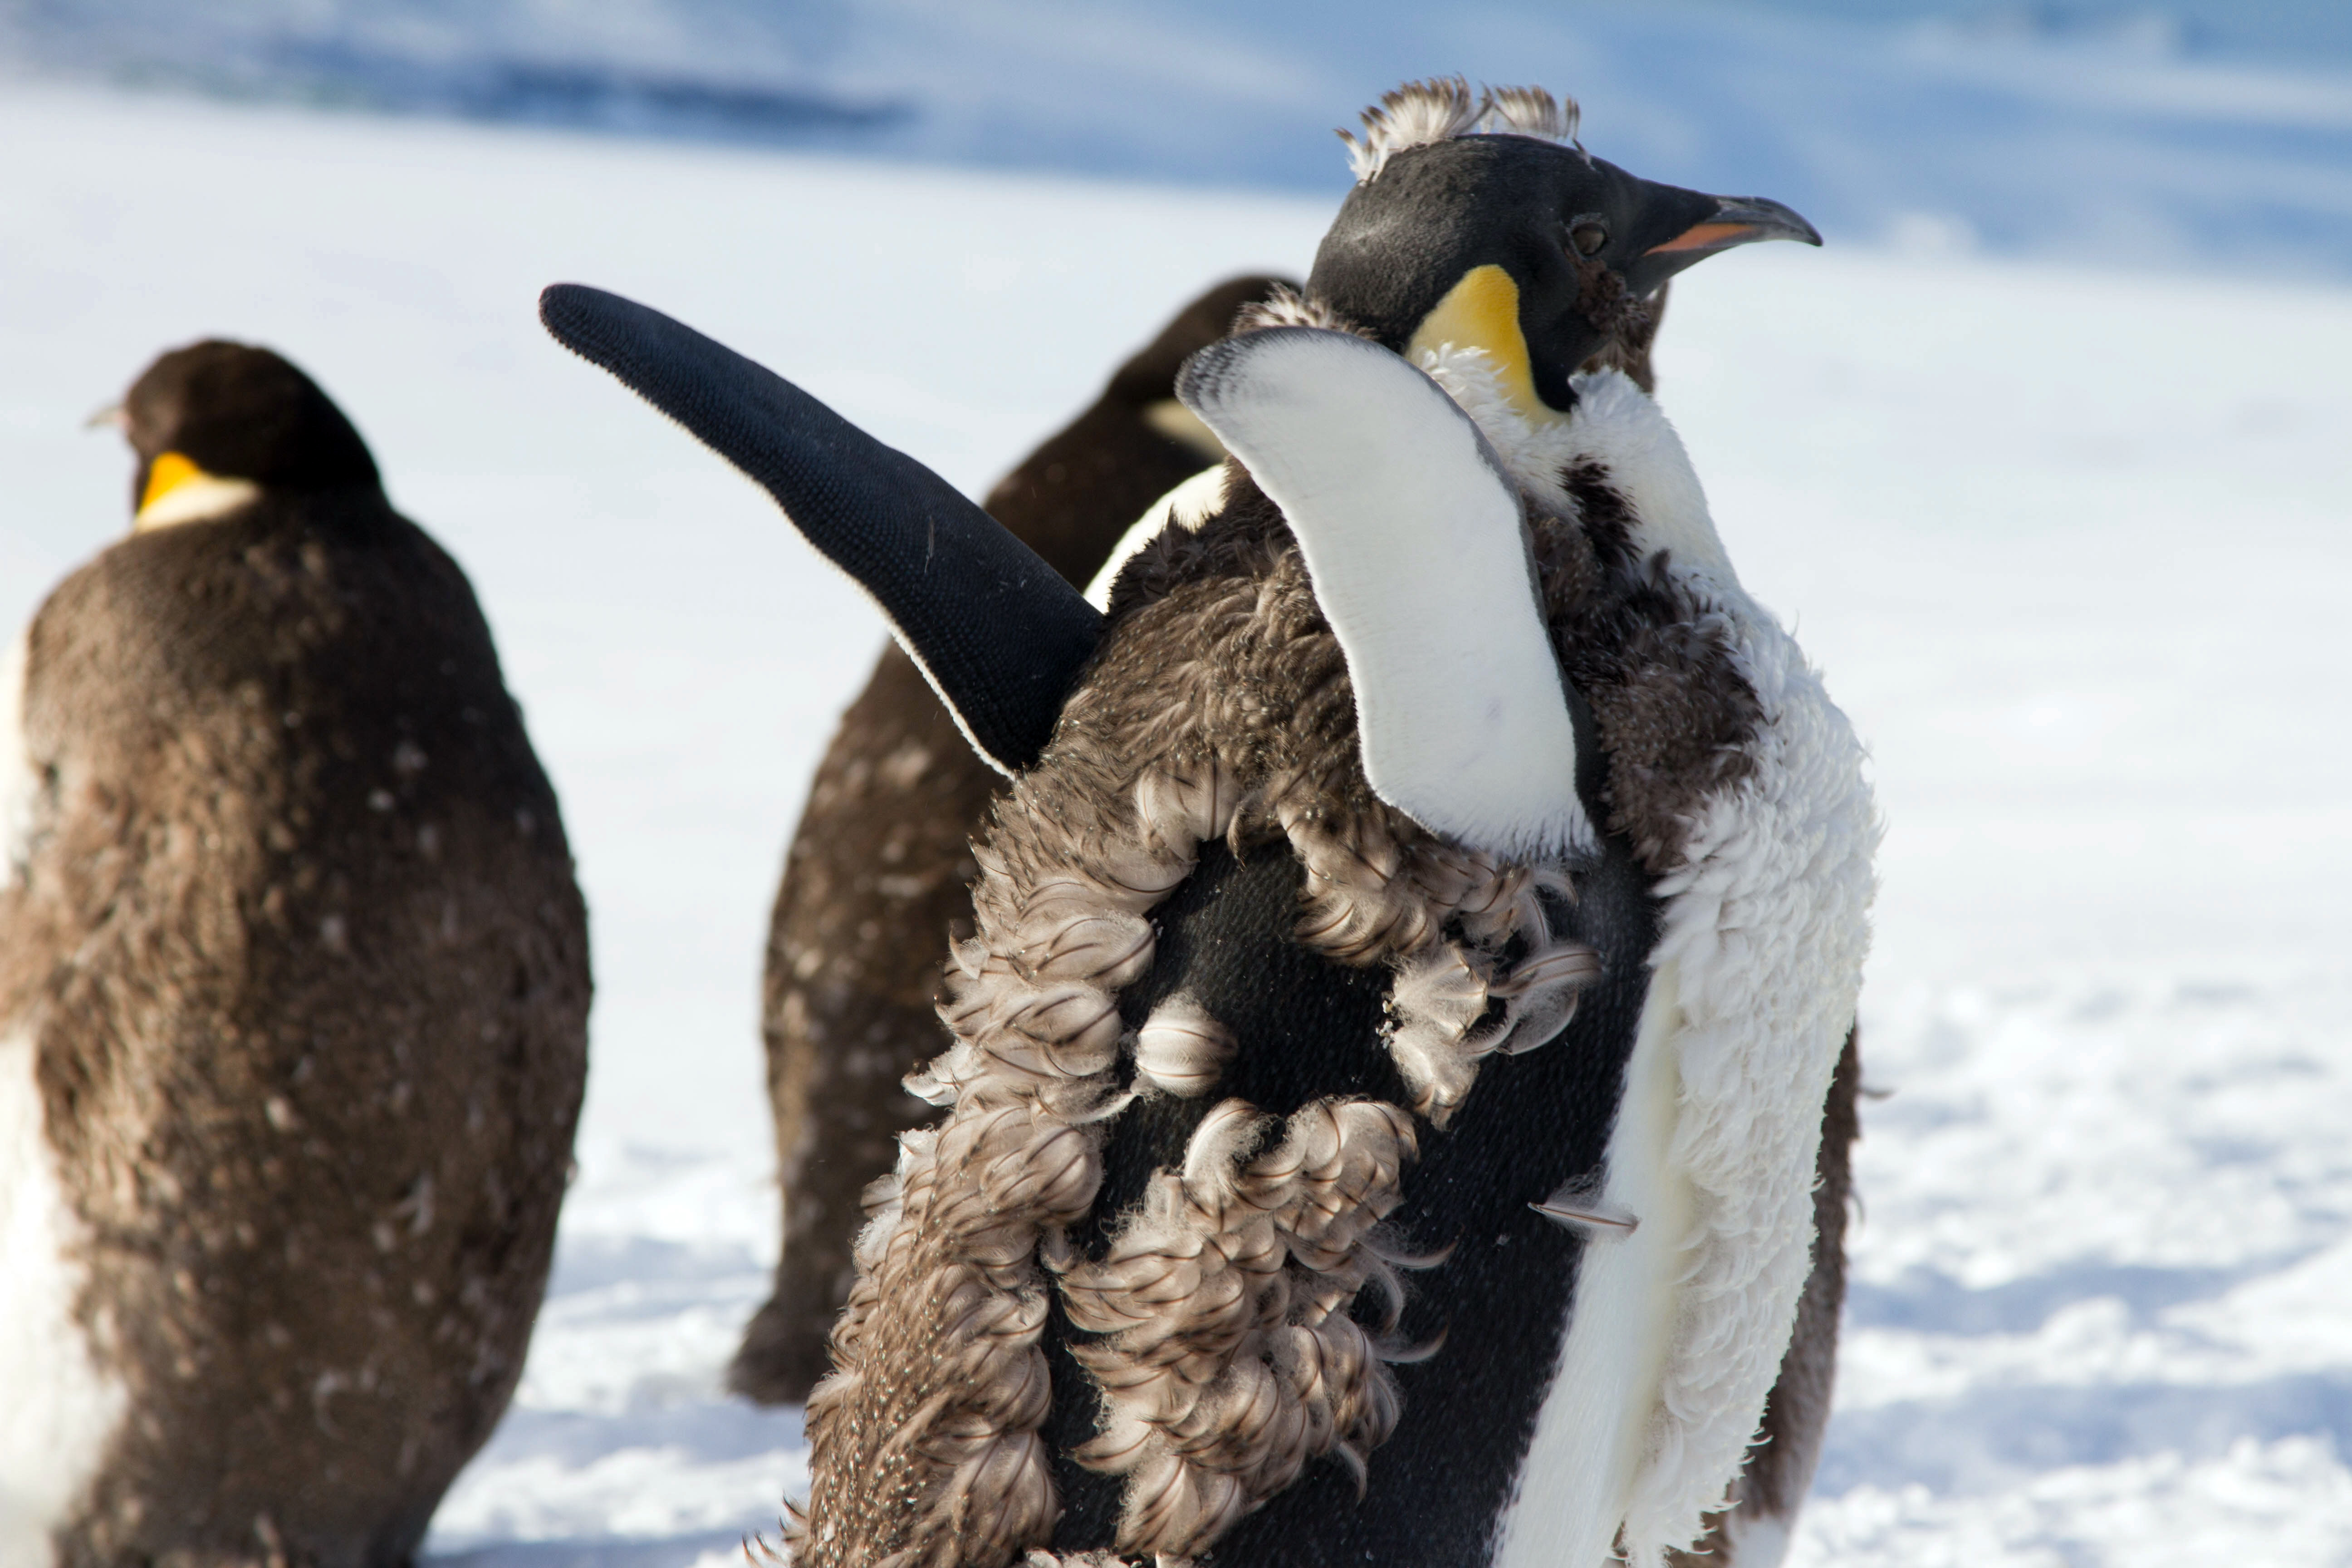 Penguins molt together on an ice shelf.